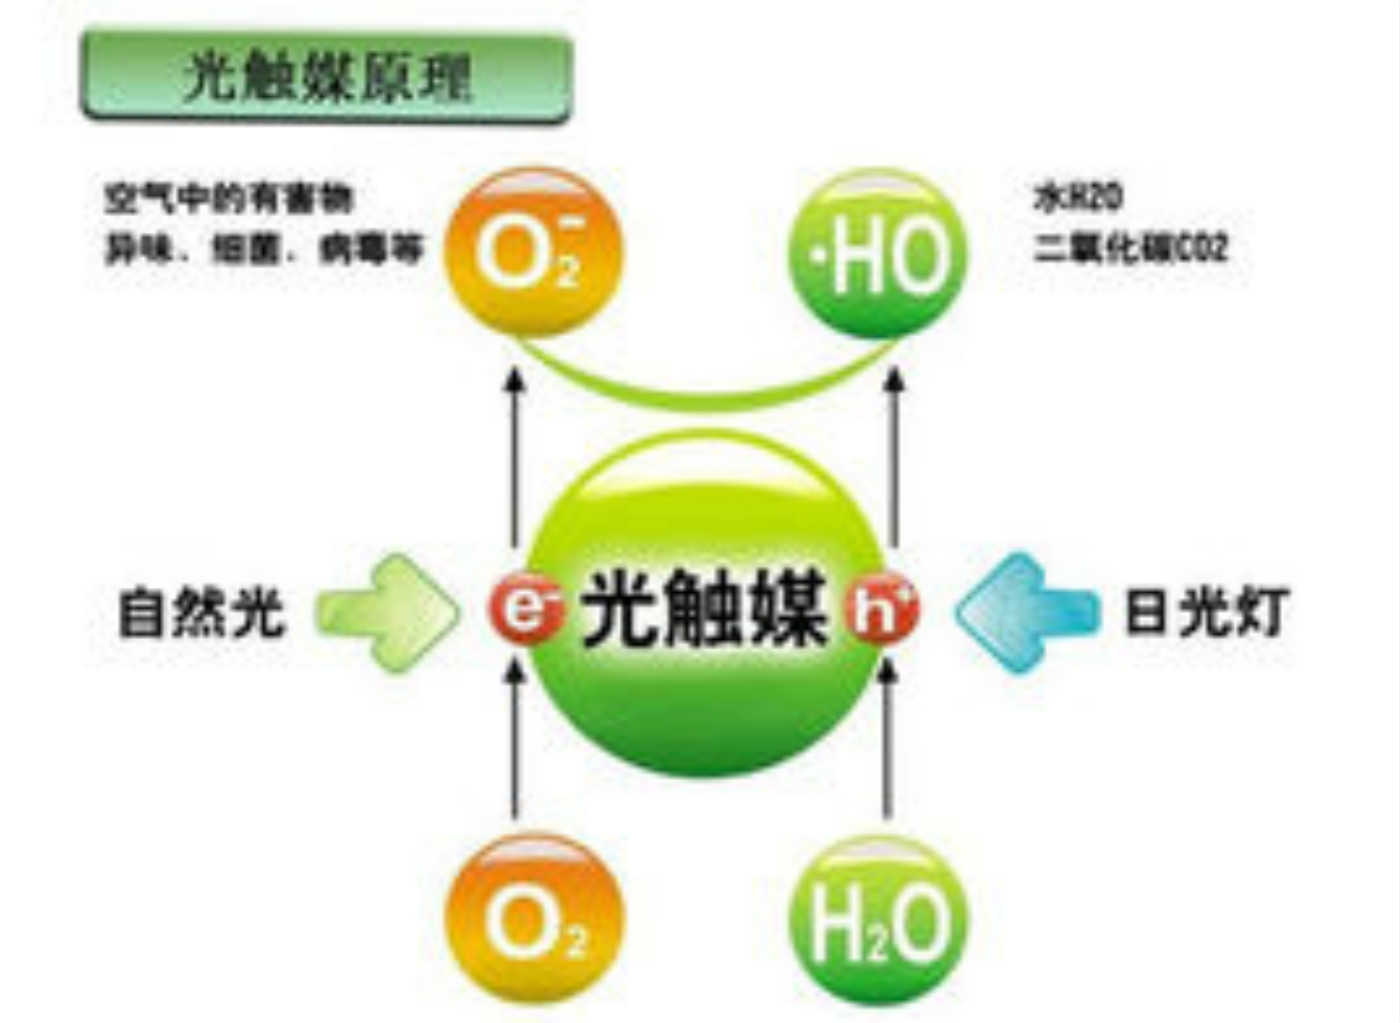 上海汇精氧化钛光触媒赋予被涂物多项特殊功能，广泛应用于各种生活空间的空气净化等